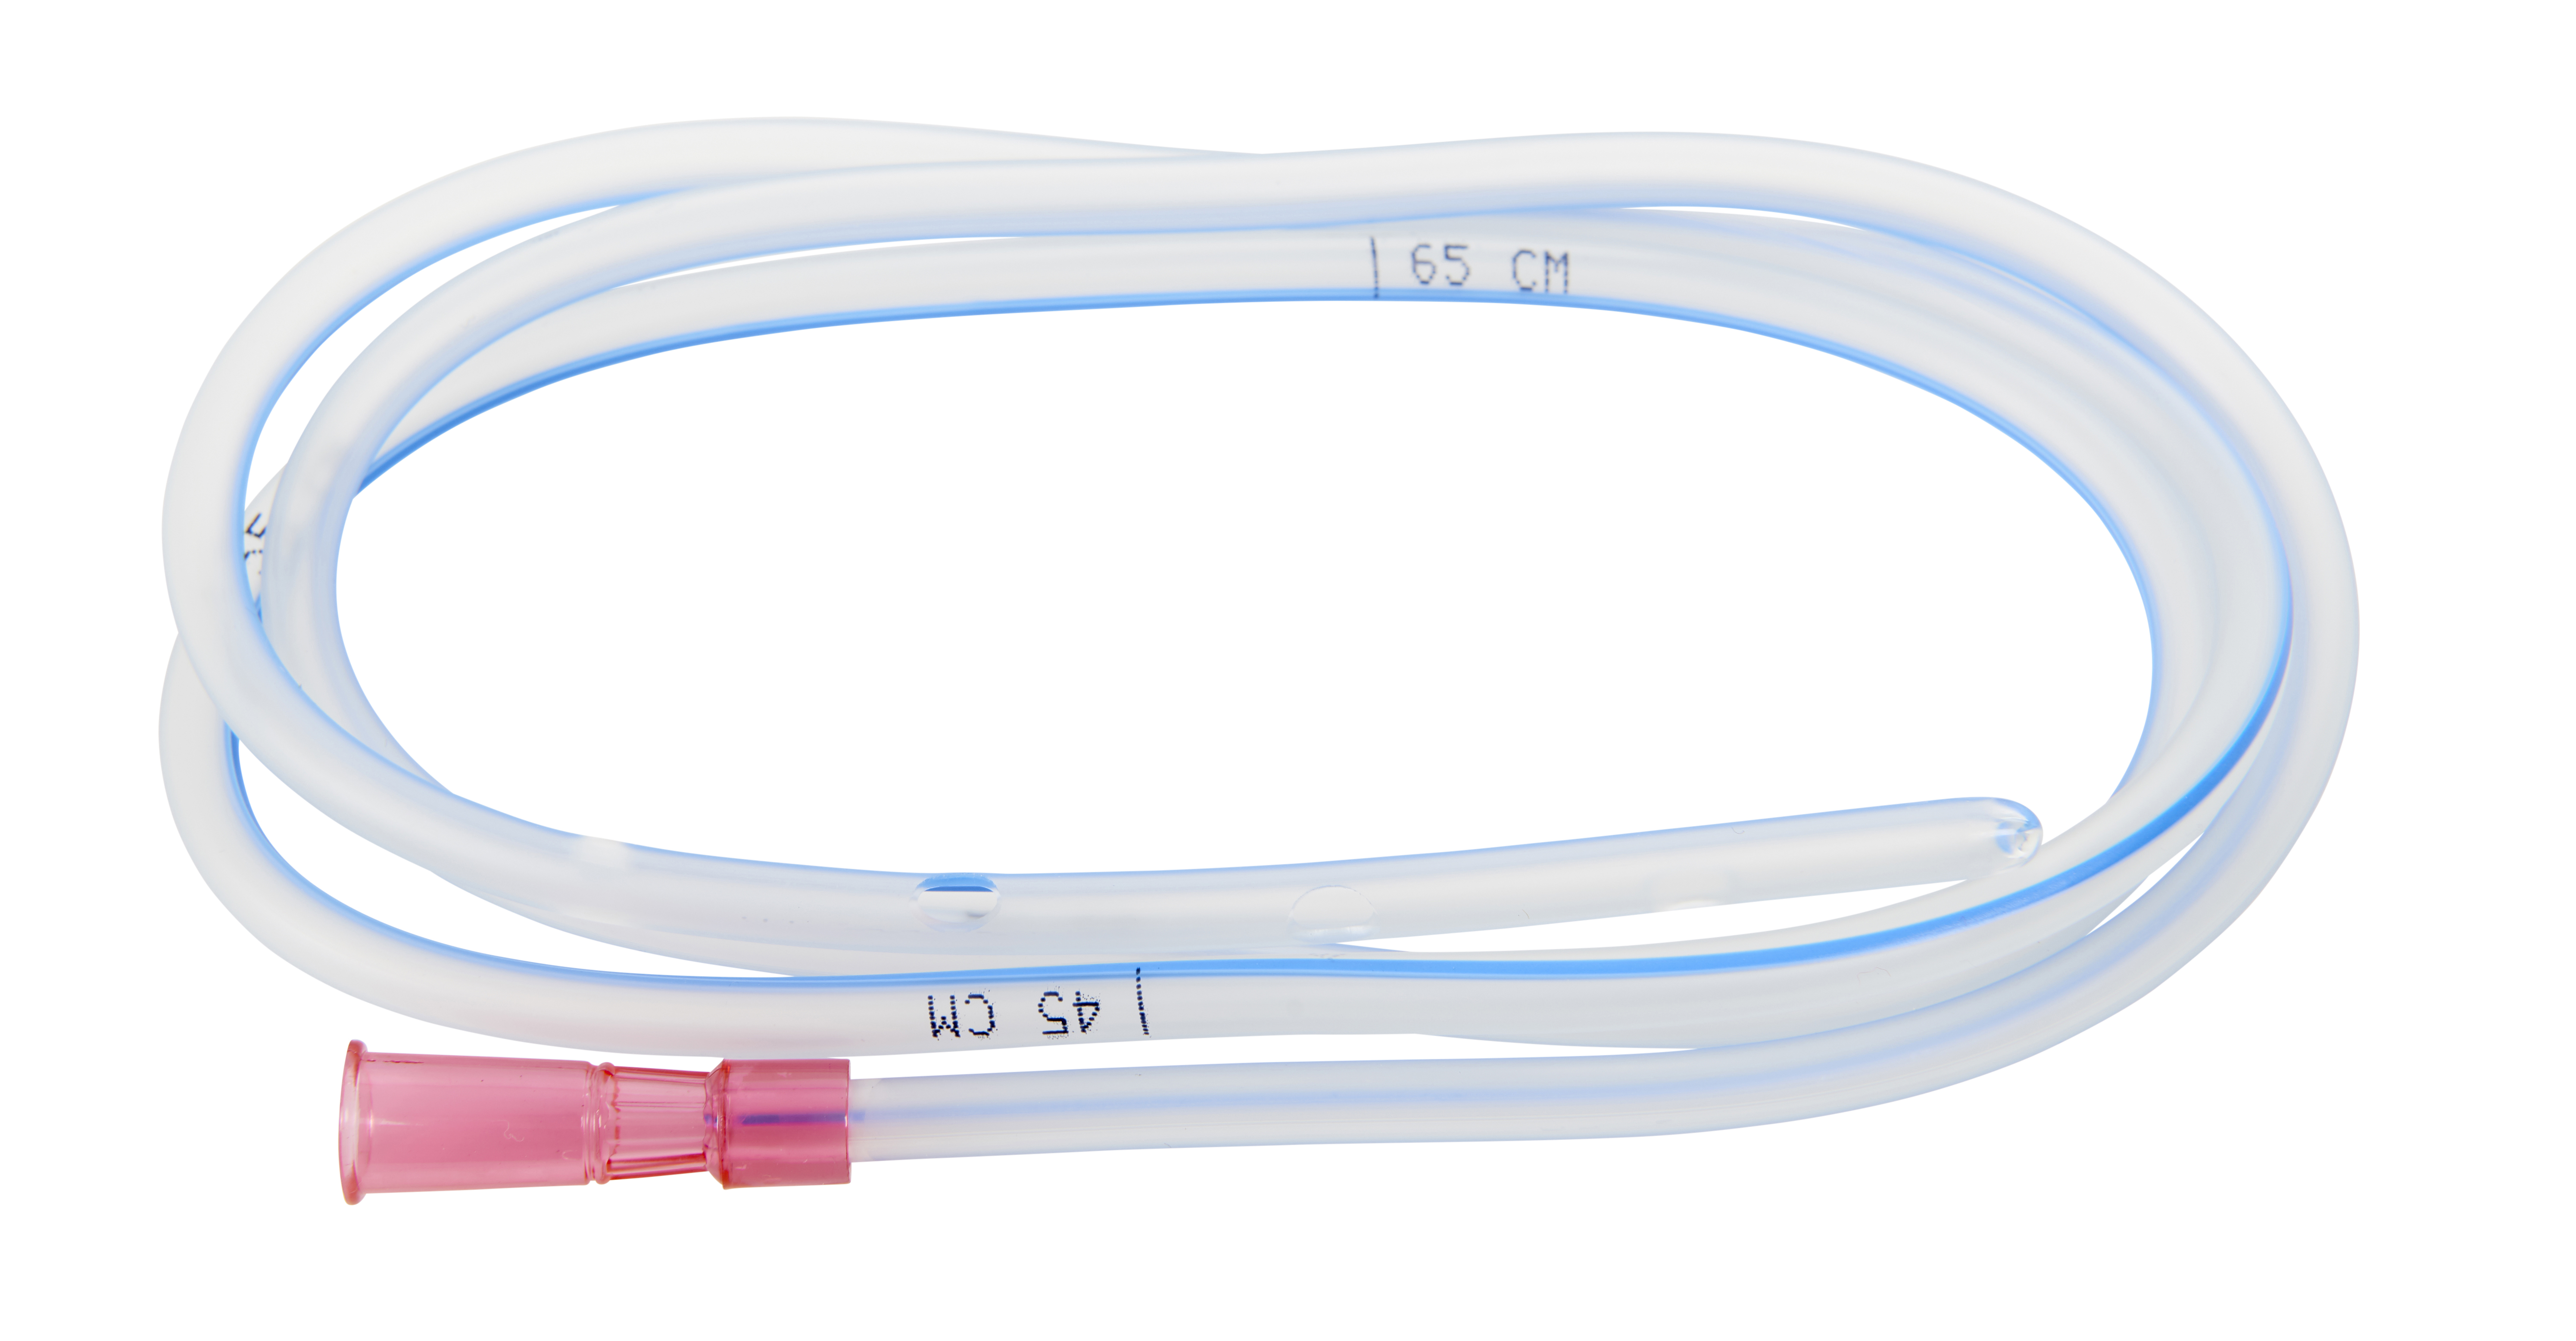 KRUUSE Stomach Tube with centimeter marks, 6,0 mm x 105 cm/18 Fr x 49, 10/pk